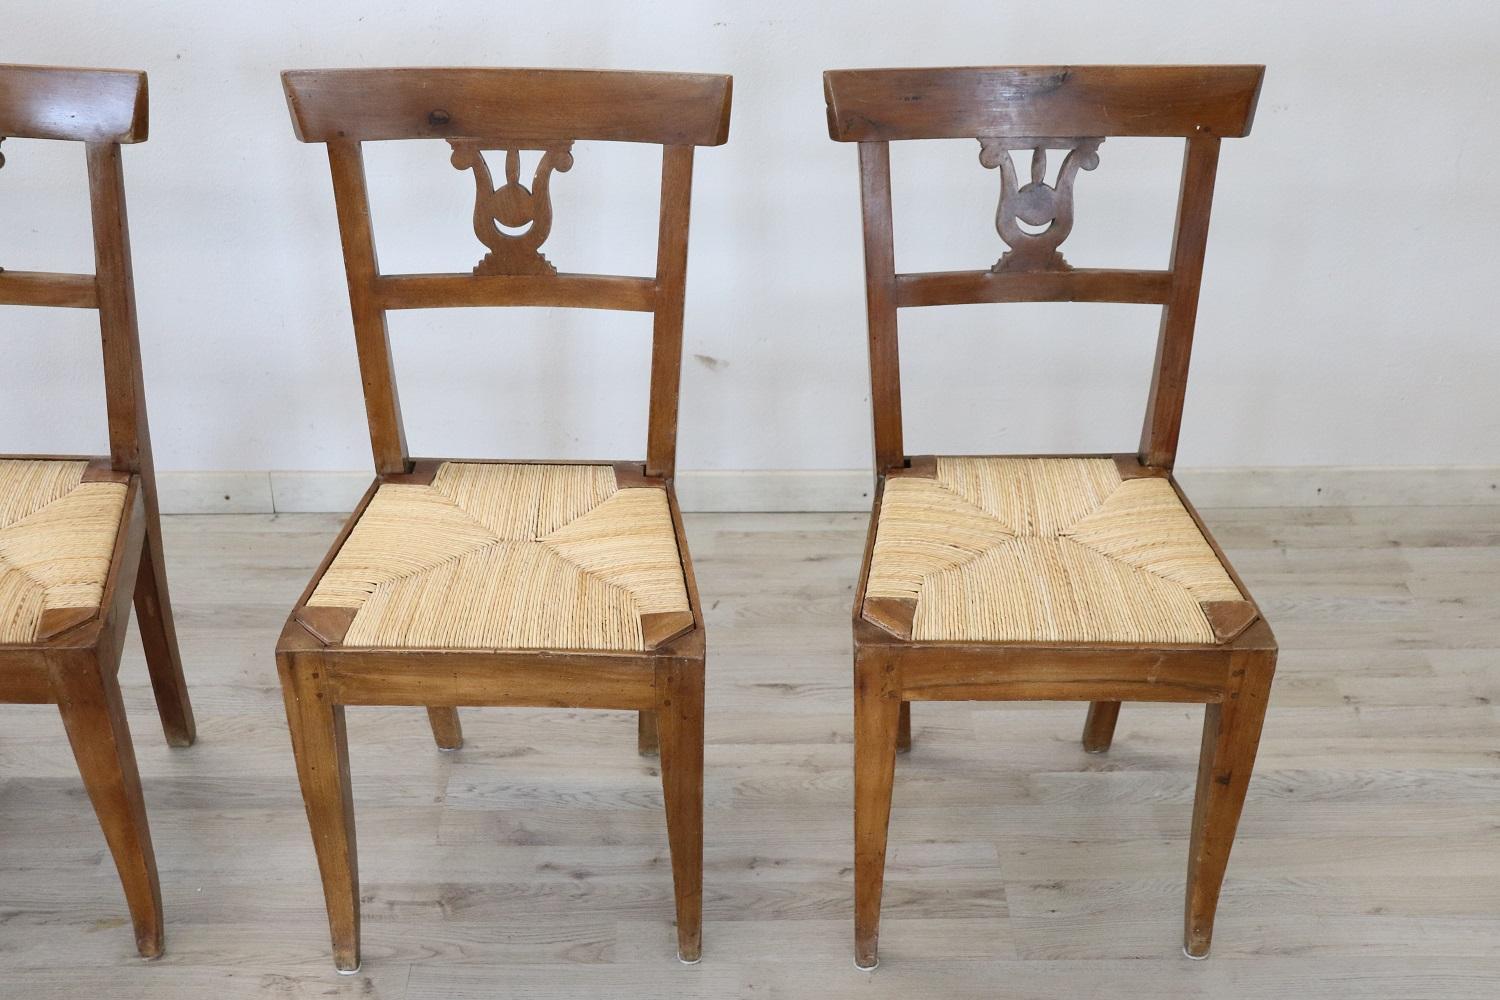 Vier antike Stühle aus geschnitztem Nussbaumholz, Italienisches Empire, frühes 19. Jahrhundert (Geschnitzt)